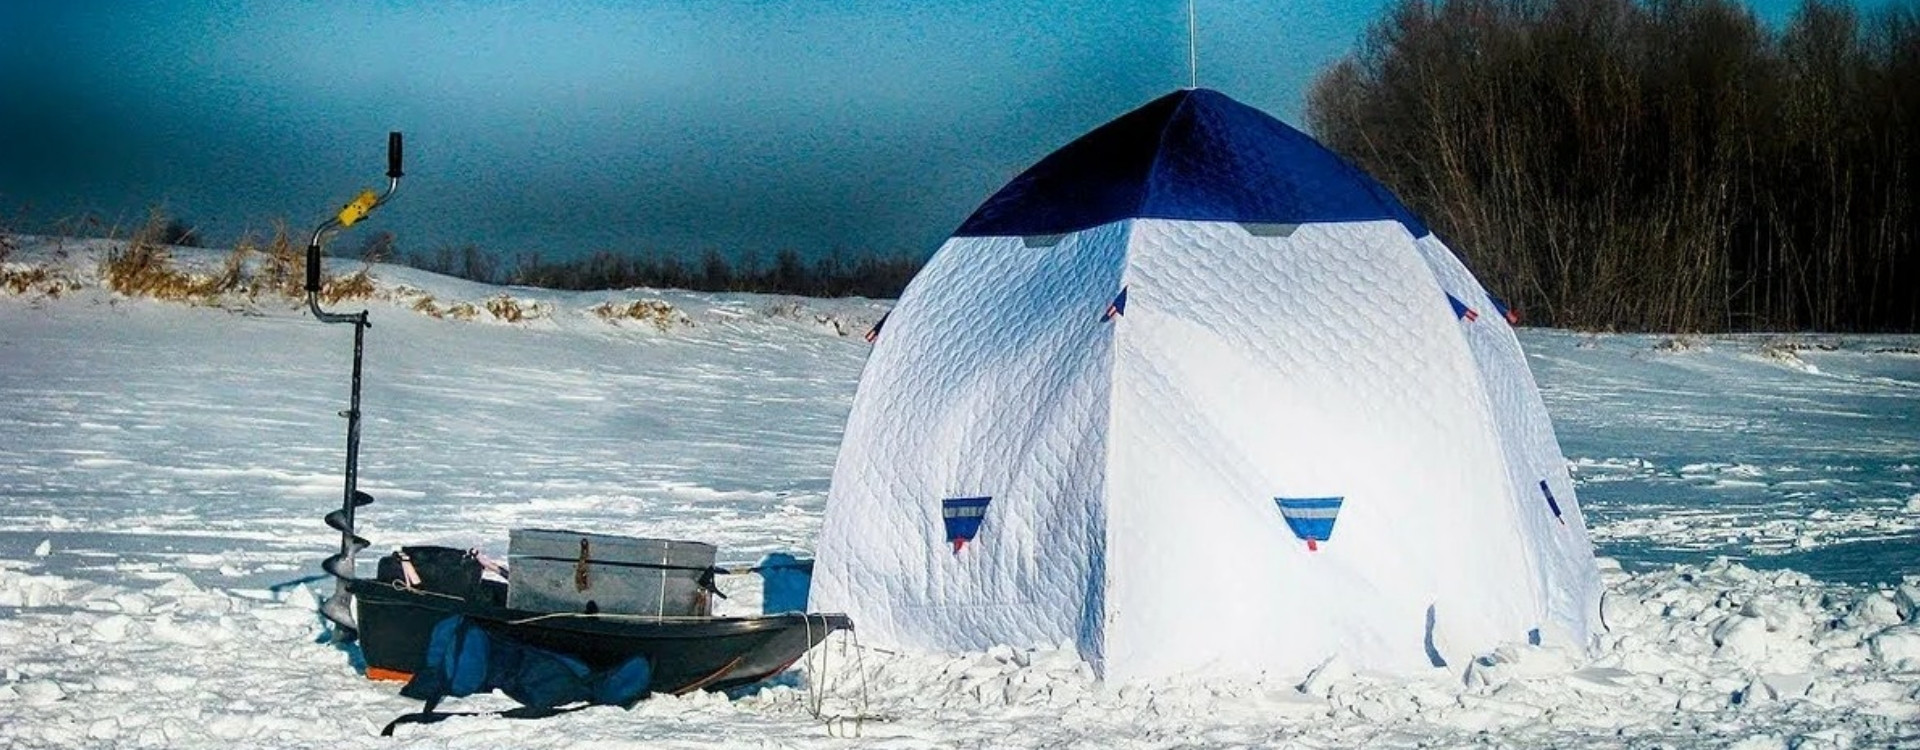 Зимняя рыбалка в палатке. Зимняя палатка зонт пинг. Рыбалка в палатке зимой. Рыбацкая палатка на льду. Зимние палатки для ночевки на льду.